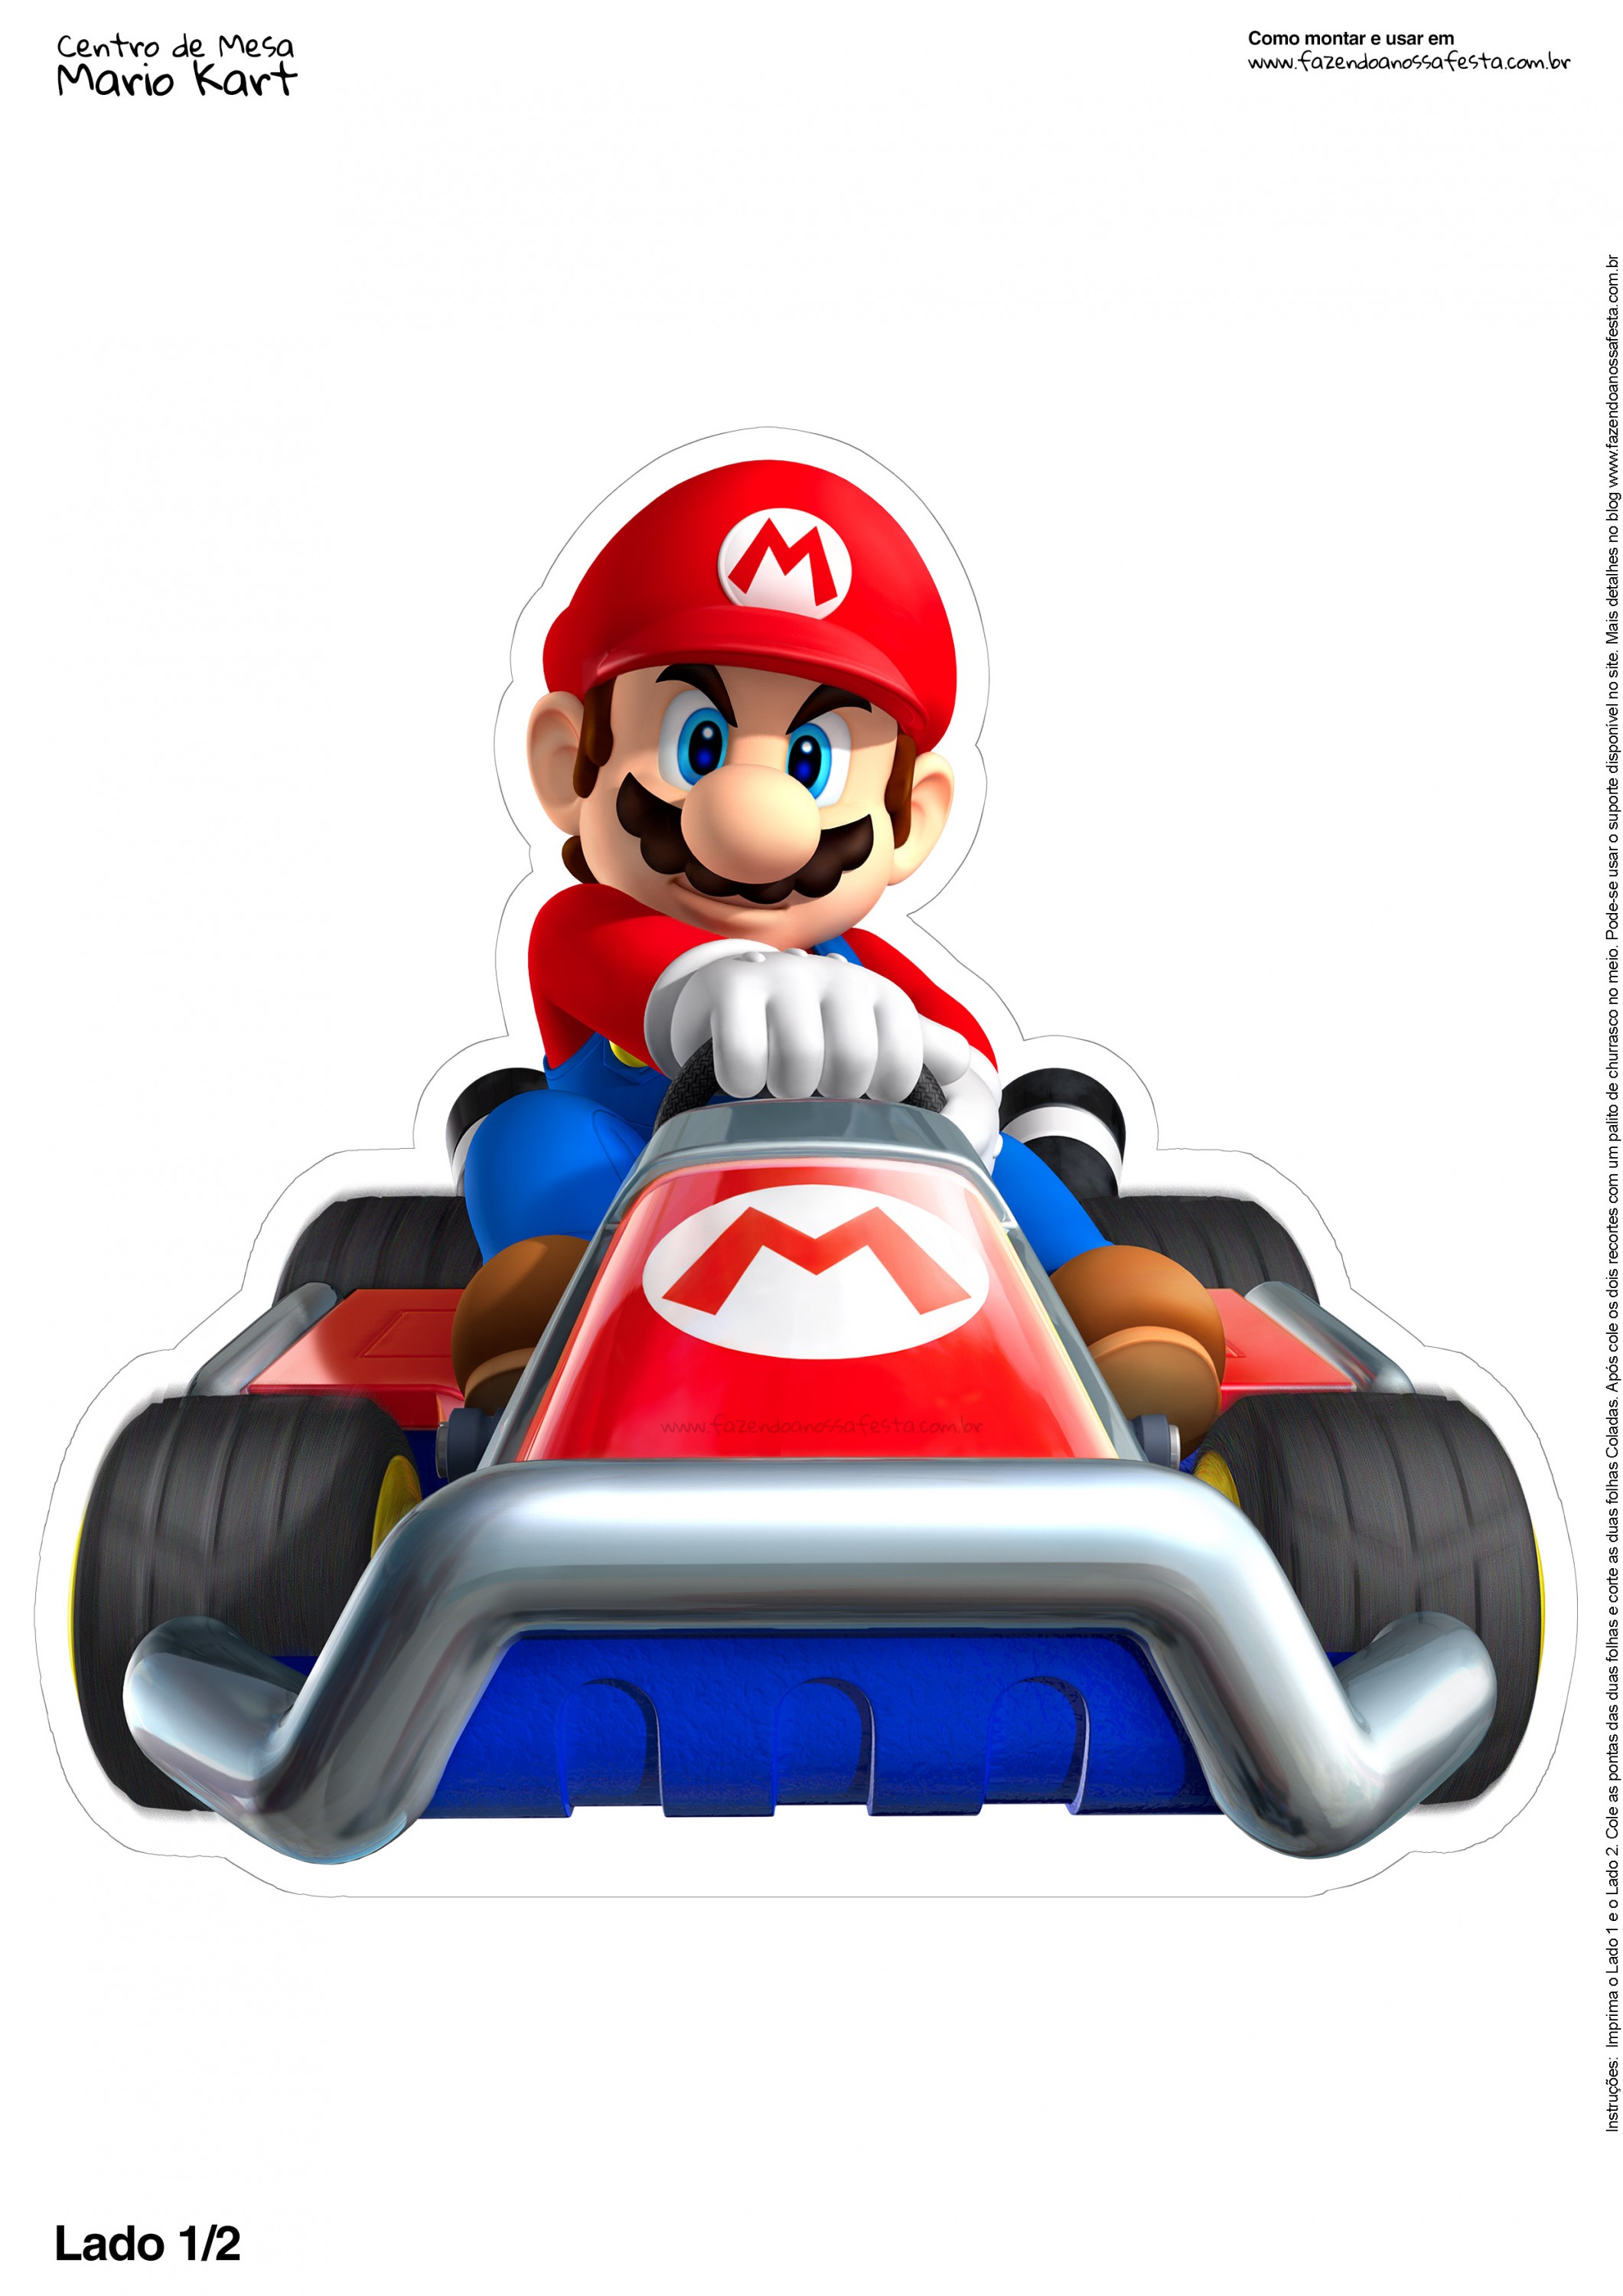 Centro de Mesa Mario Kart 1 2